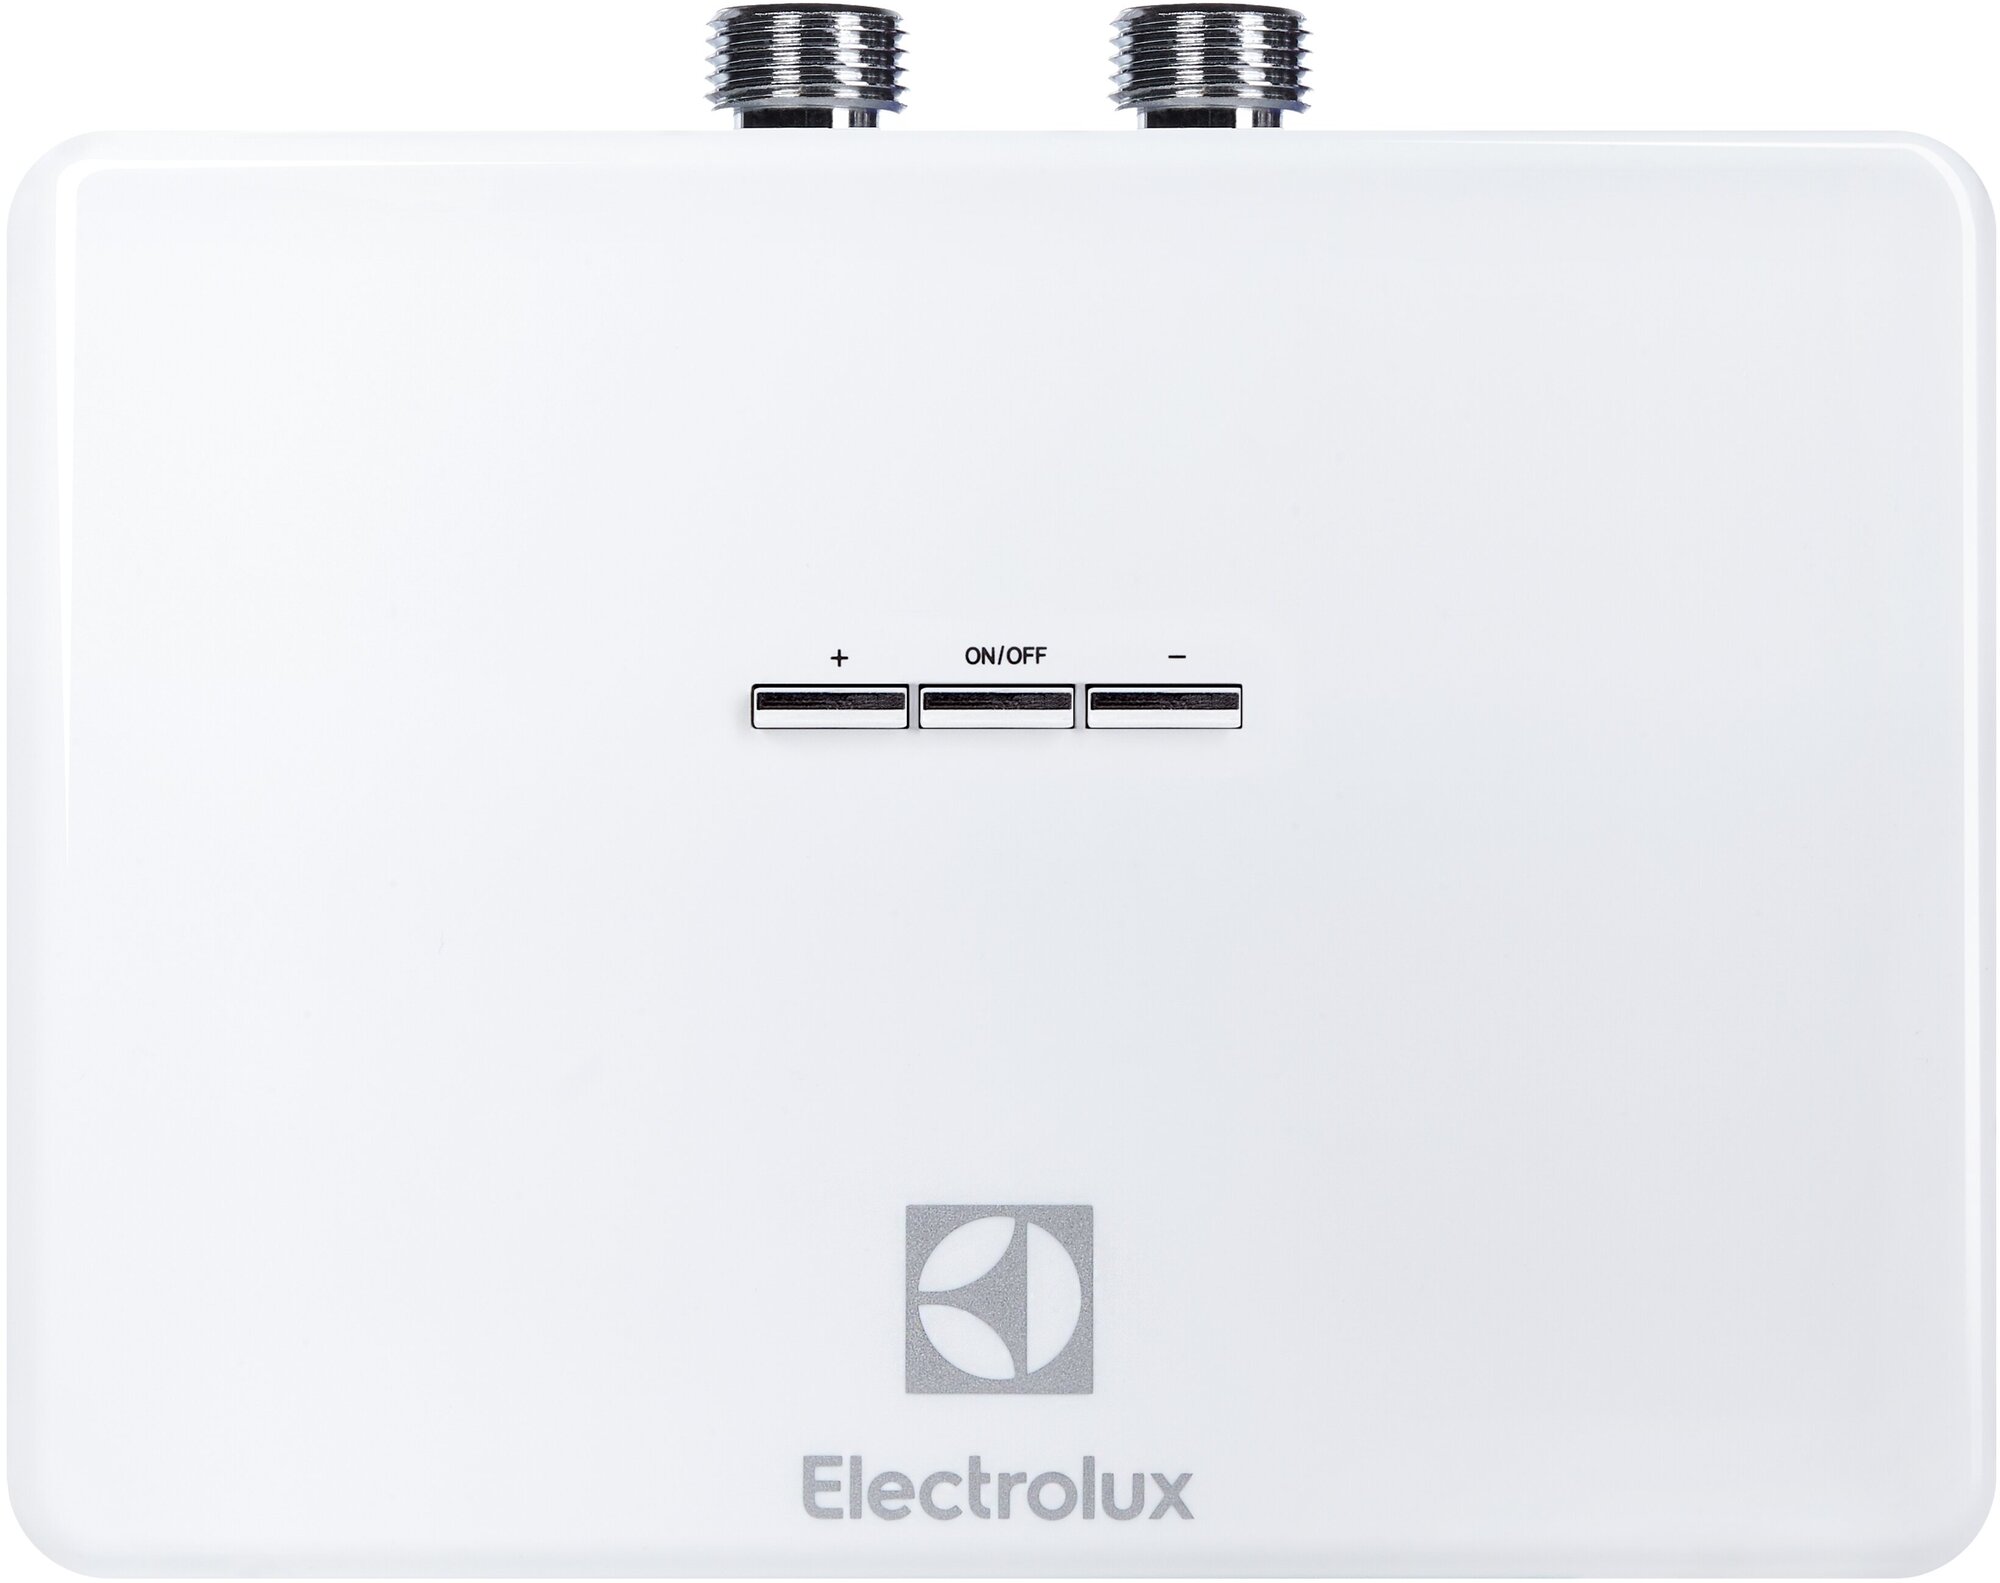 Electrolux электрический проточный водонагреватель 8 кВт - фото №2